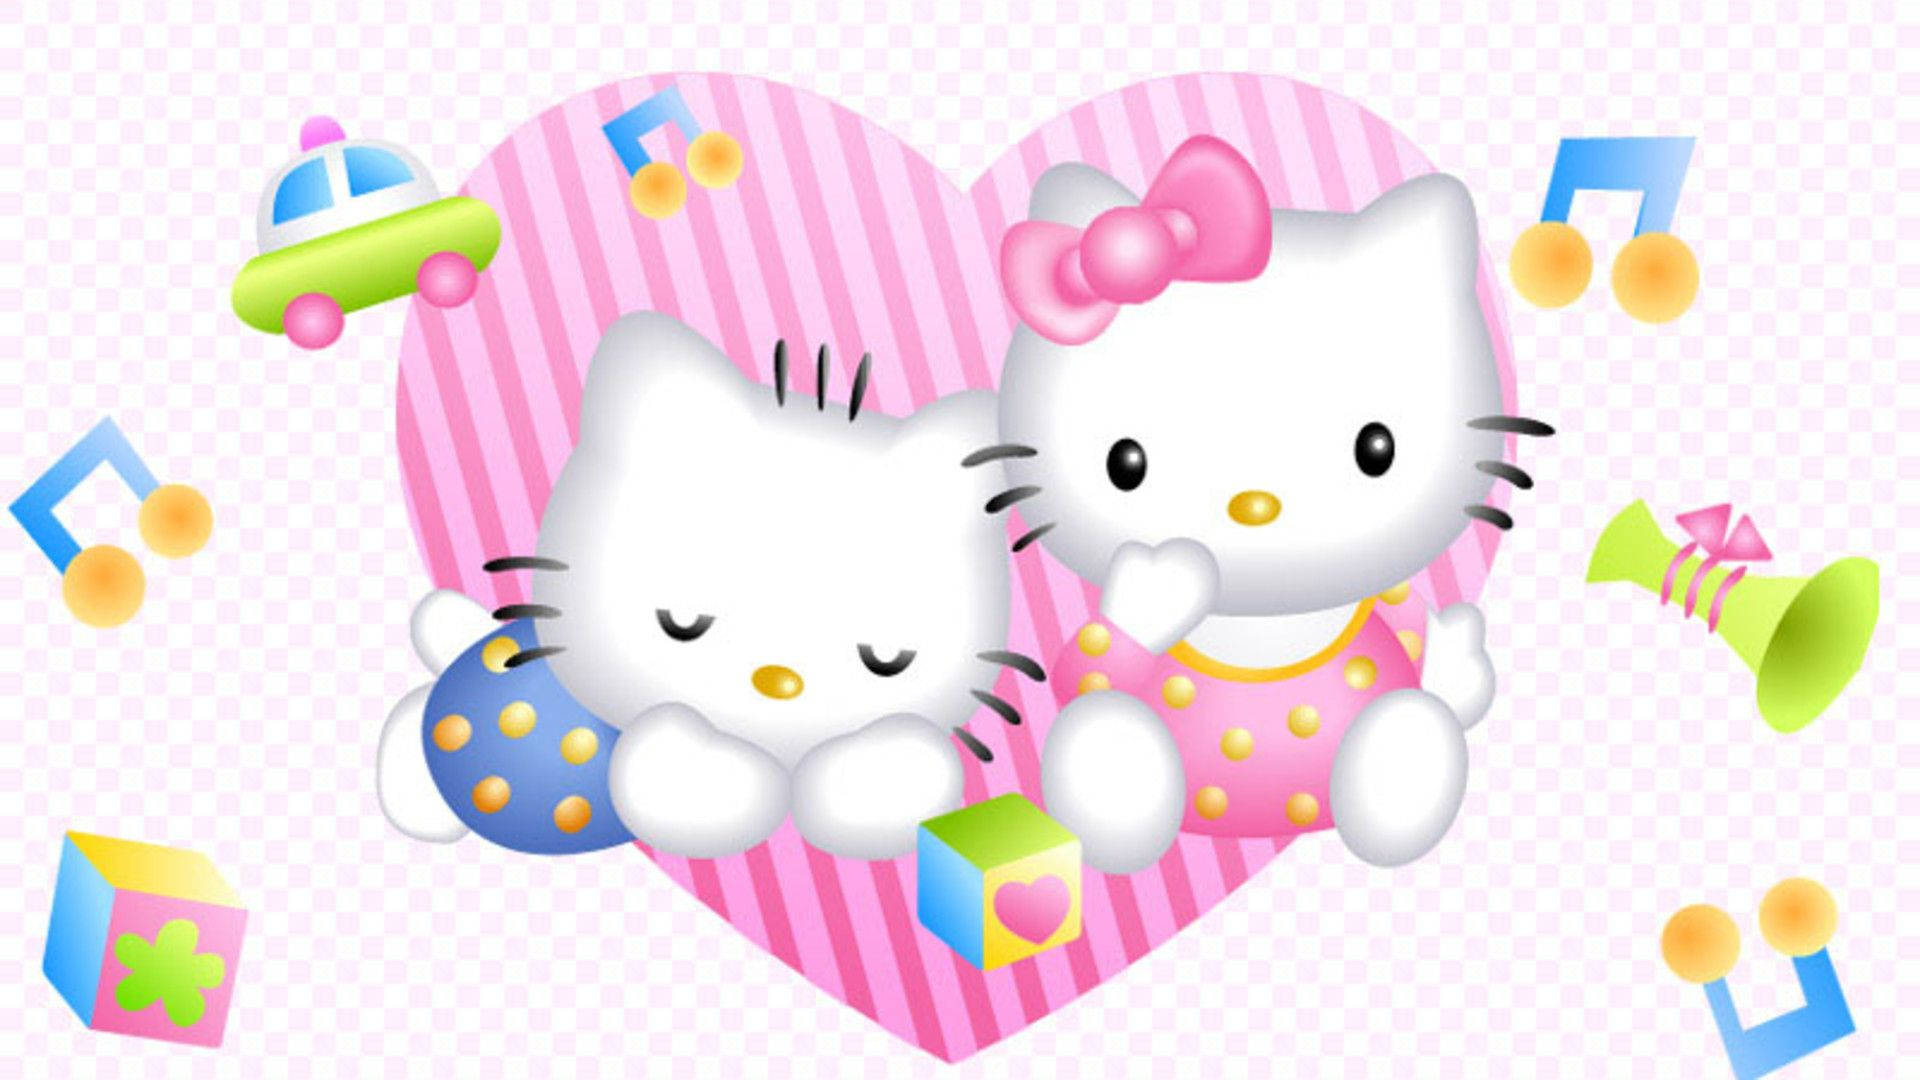 Hello Kitty Preppy Wallpaper in JPG - Download